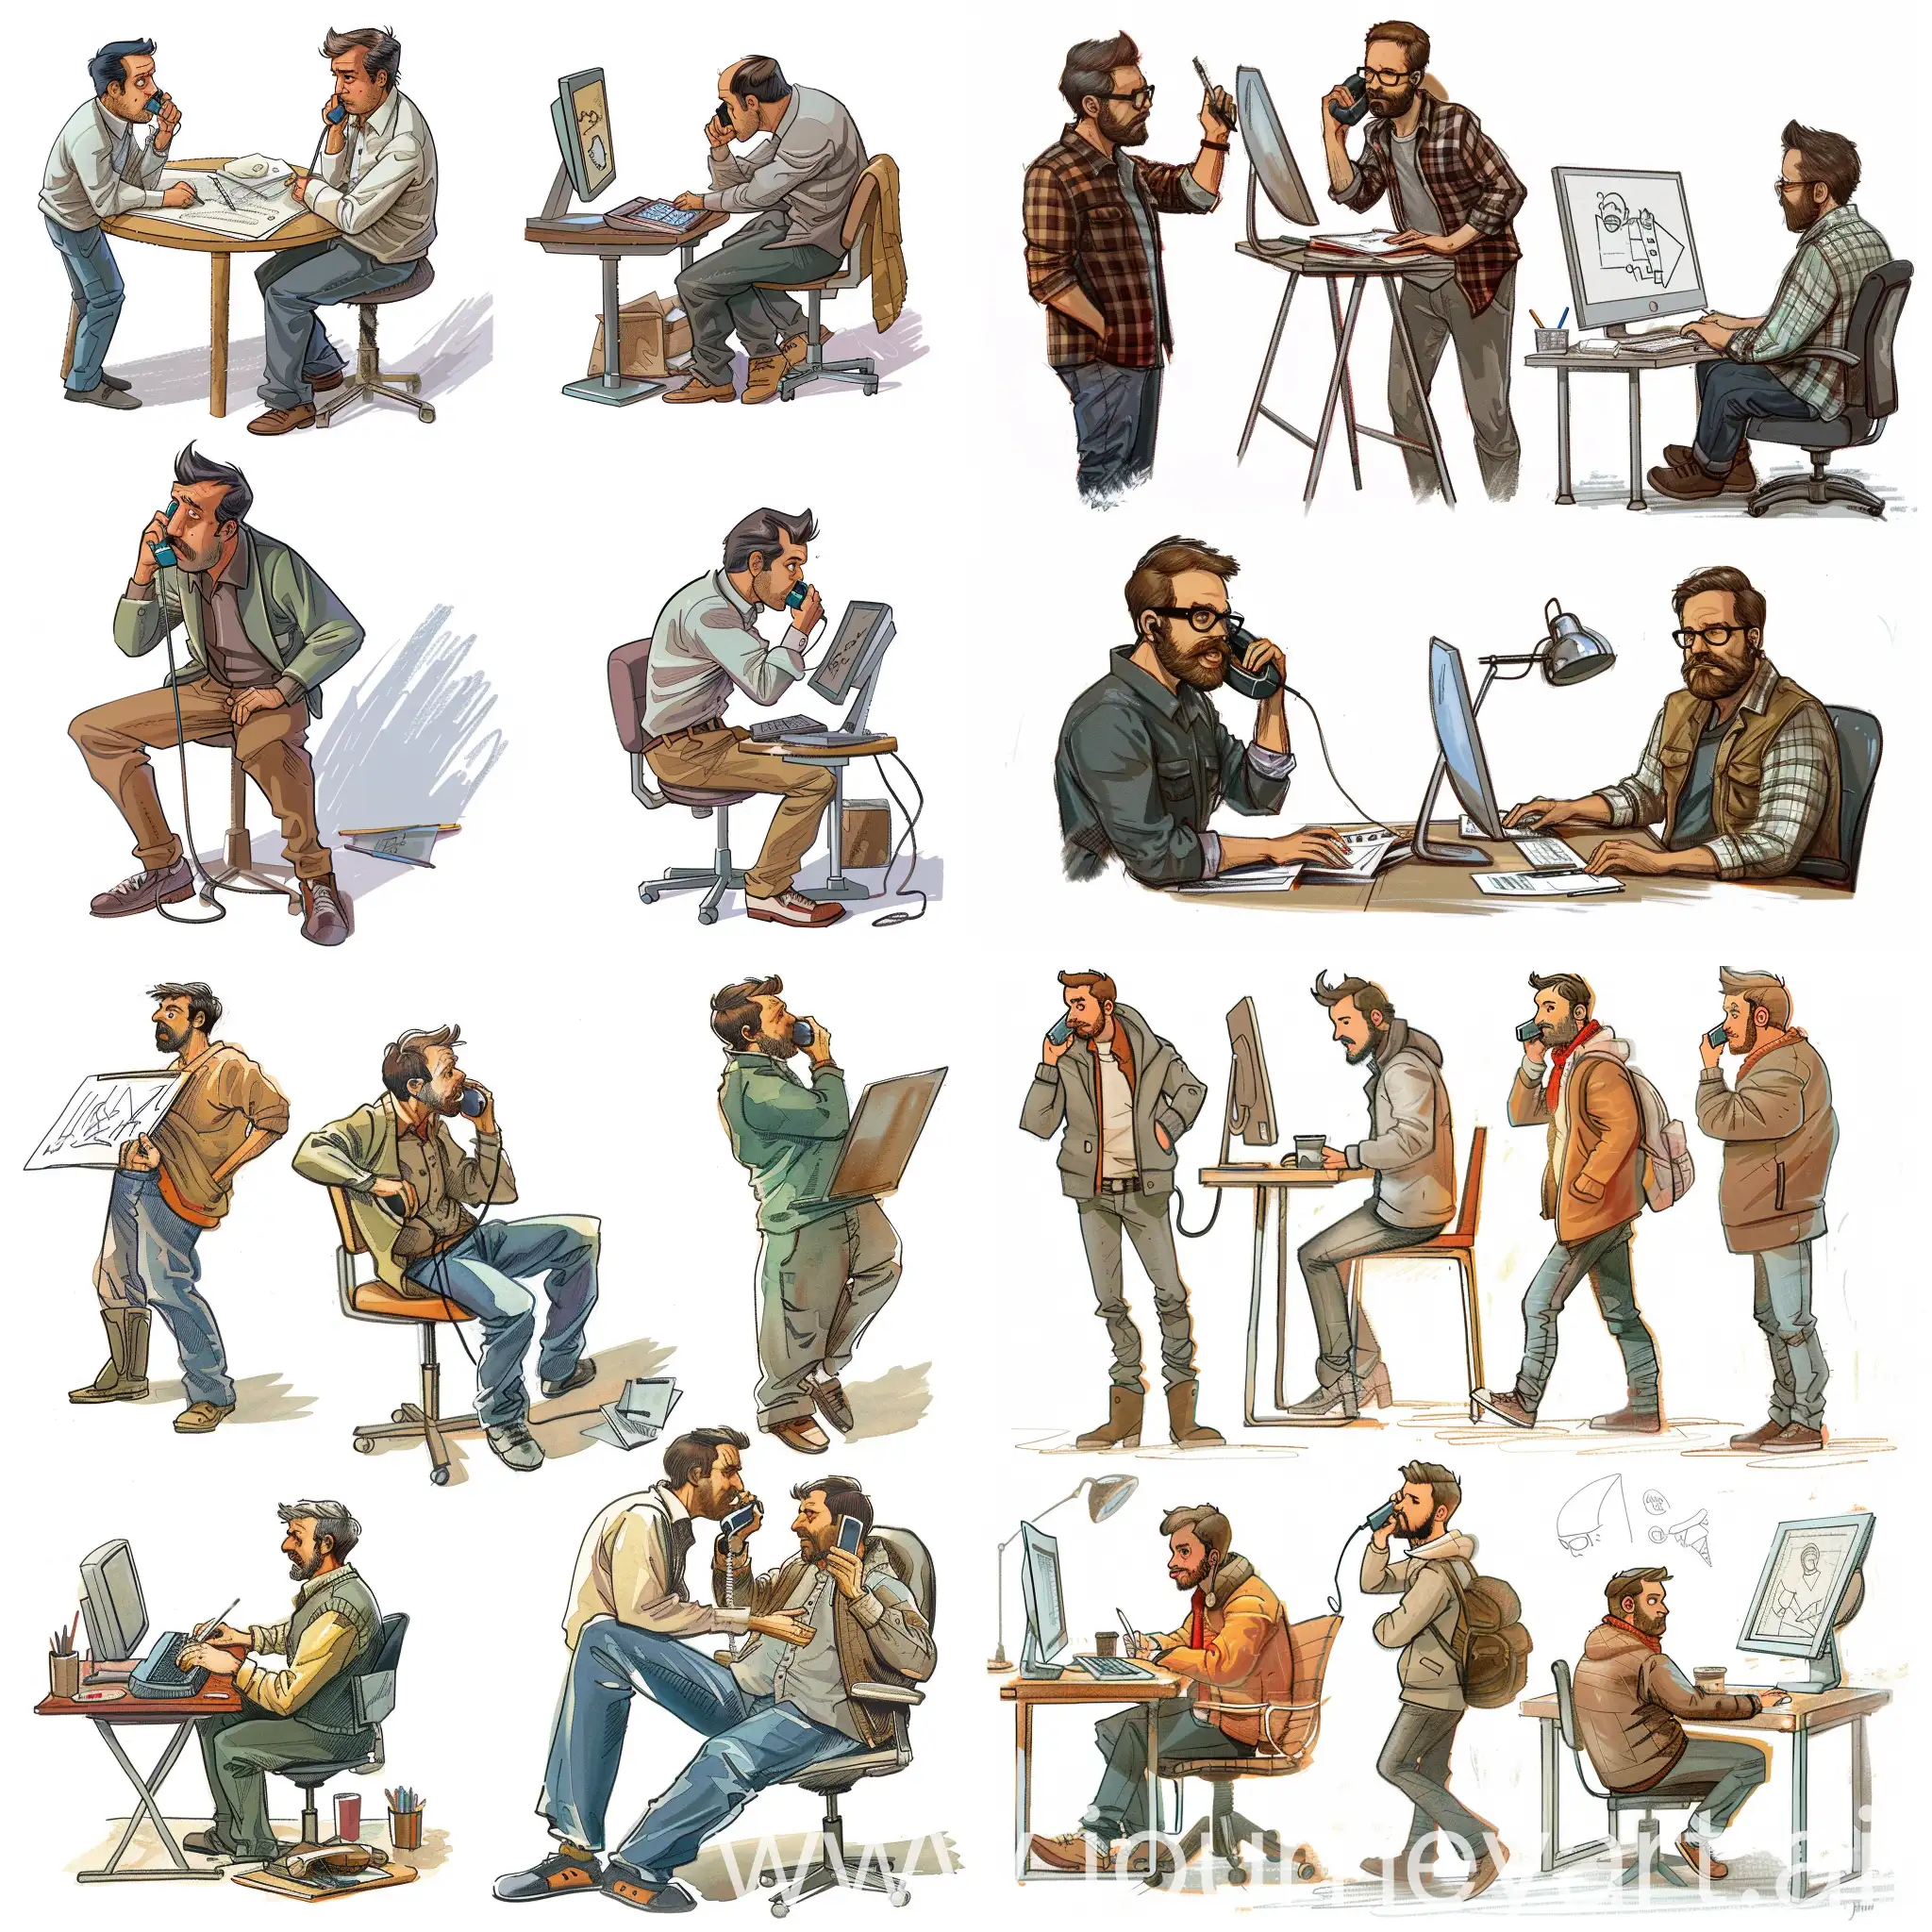 на картинке должно быть нарисовано 5 мужчин, которые делают разную работу, рисуют, говорят по телефону, сидят за компьютером. Стиль шуточный